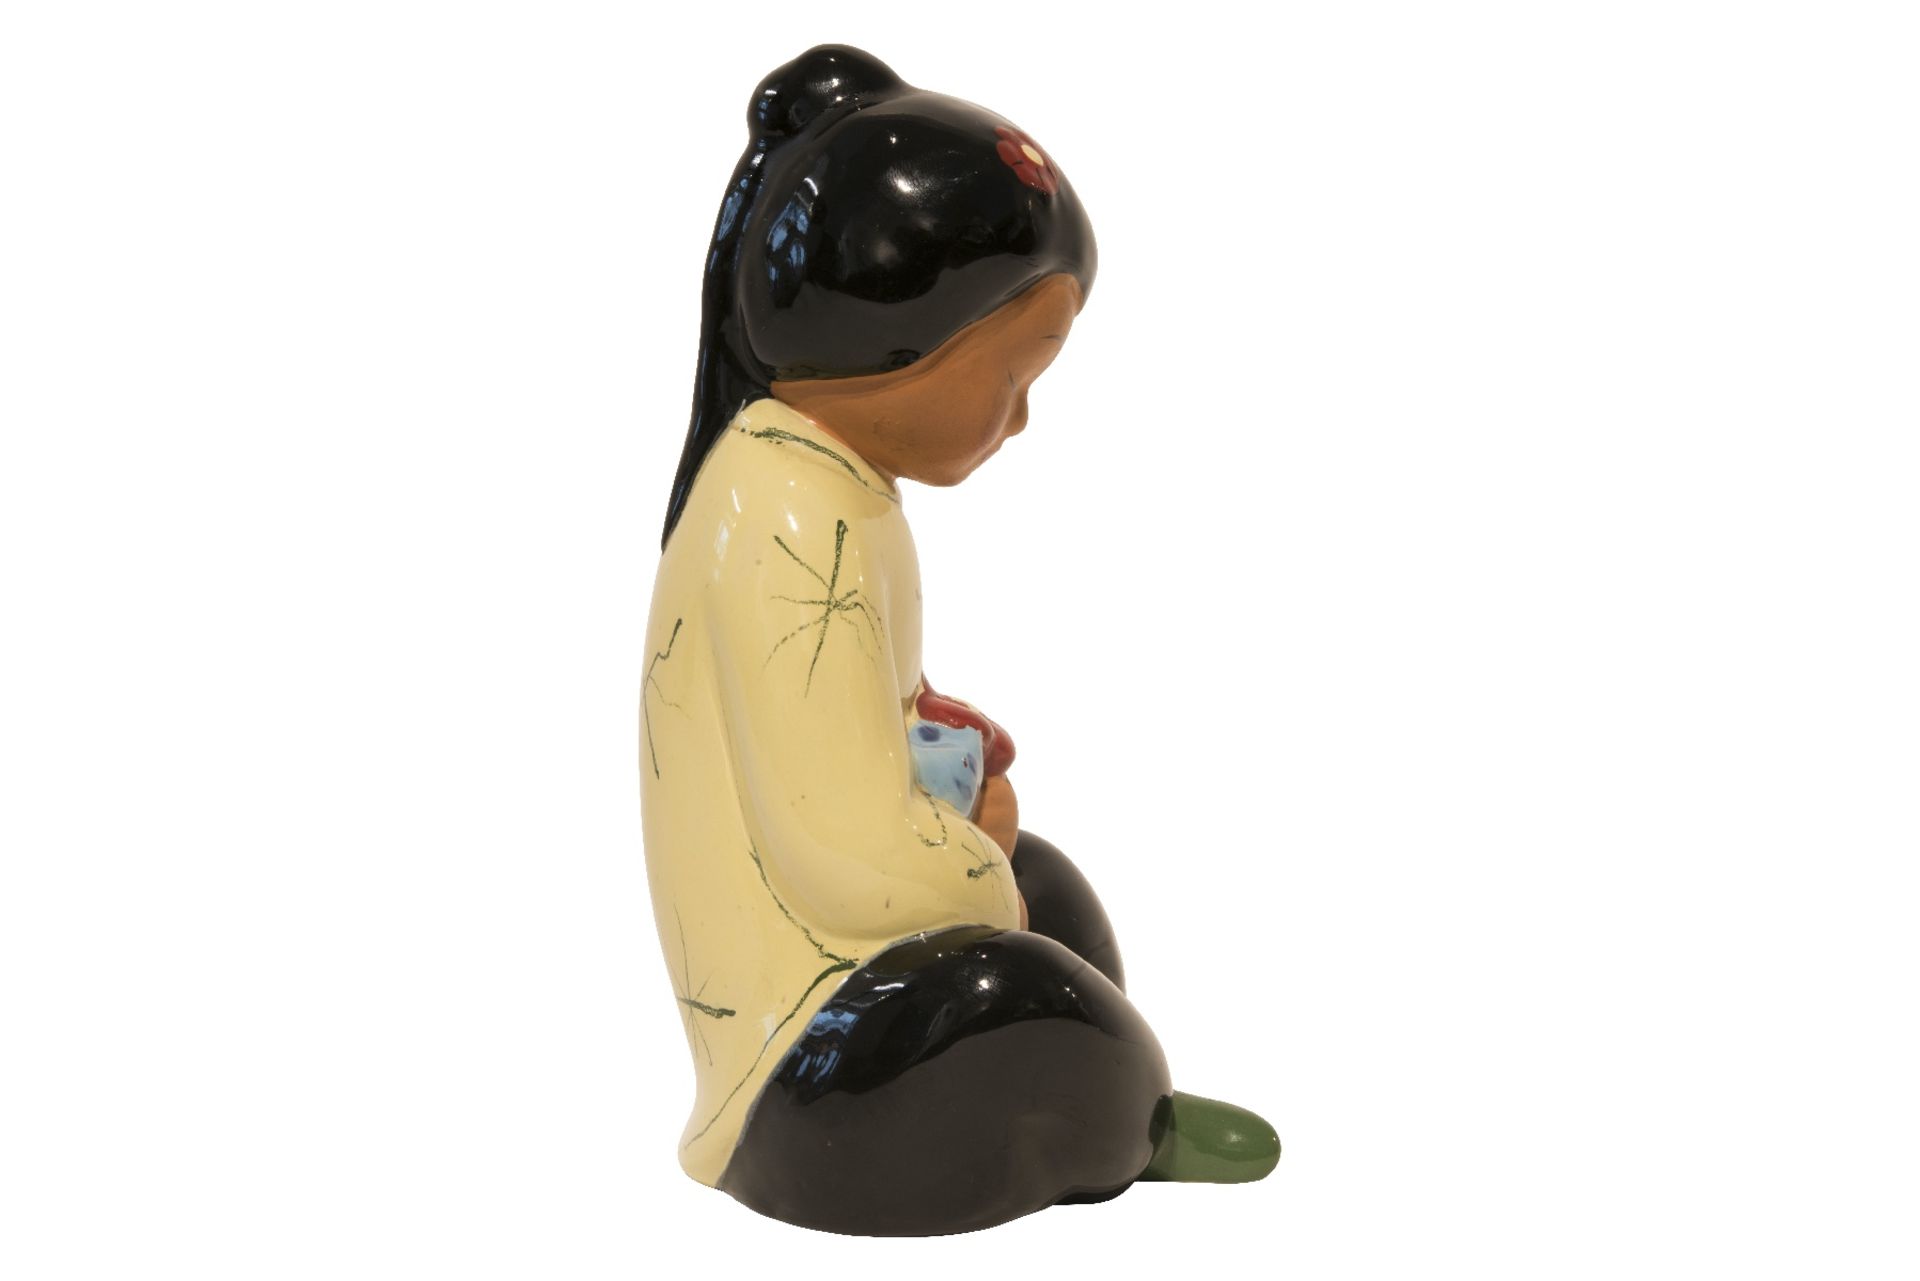 Gmundner Keramik Sitzende Chinesin - Bild 3 aus 5